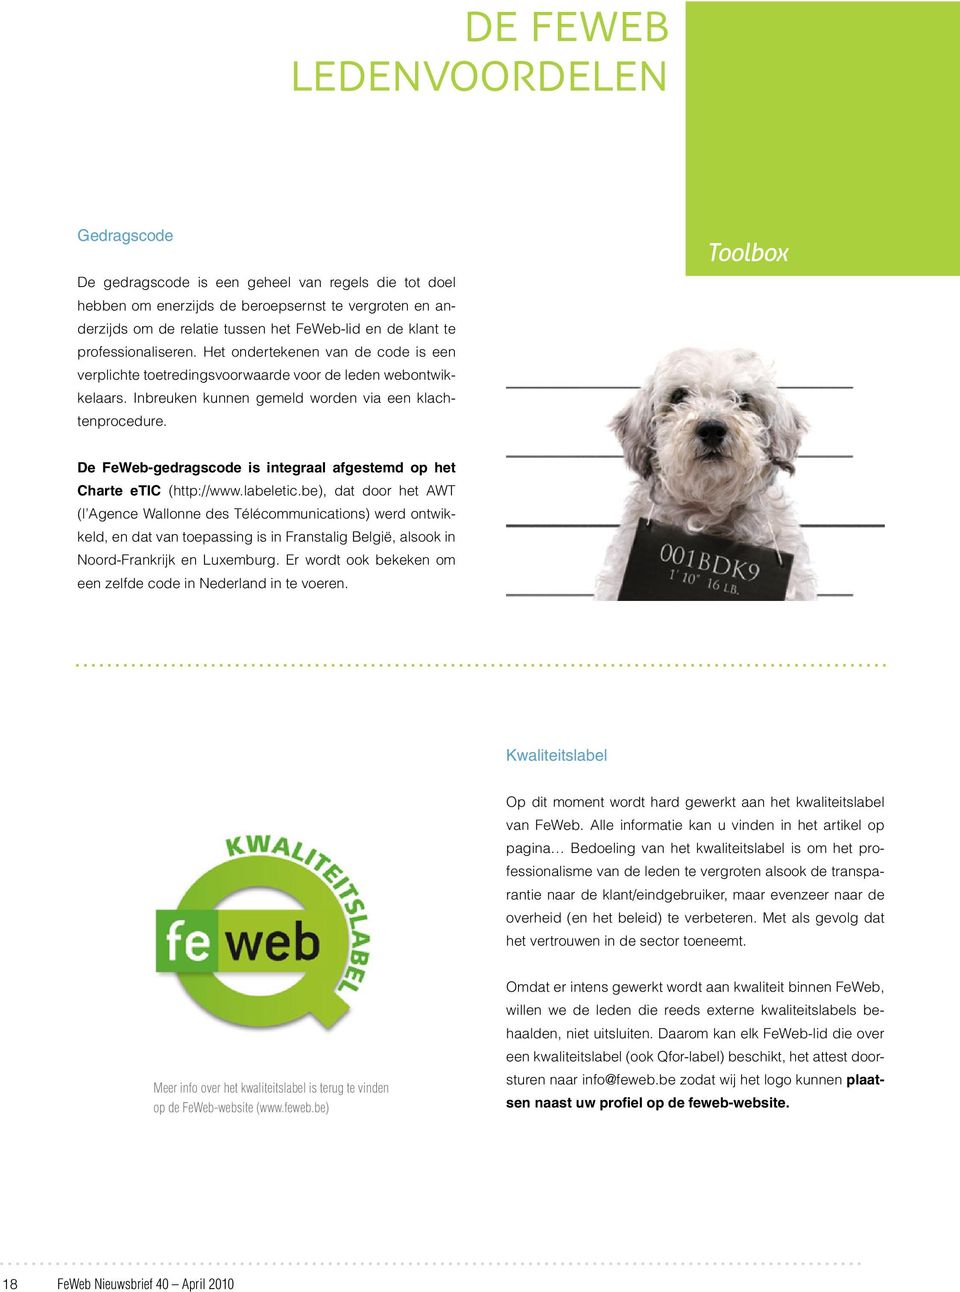 Toolbox De FeWeb-gedragscode is integraal afgestemd op het Charte etic (http://www.labeletic.